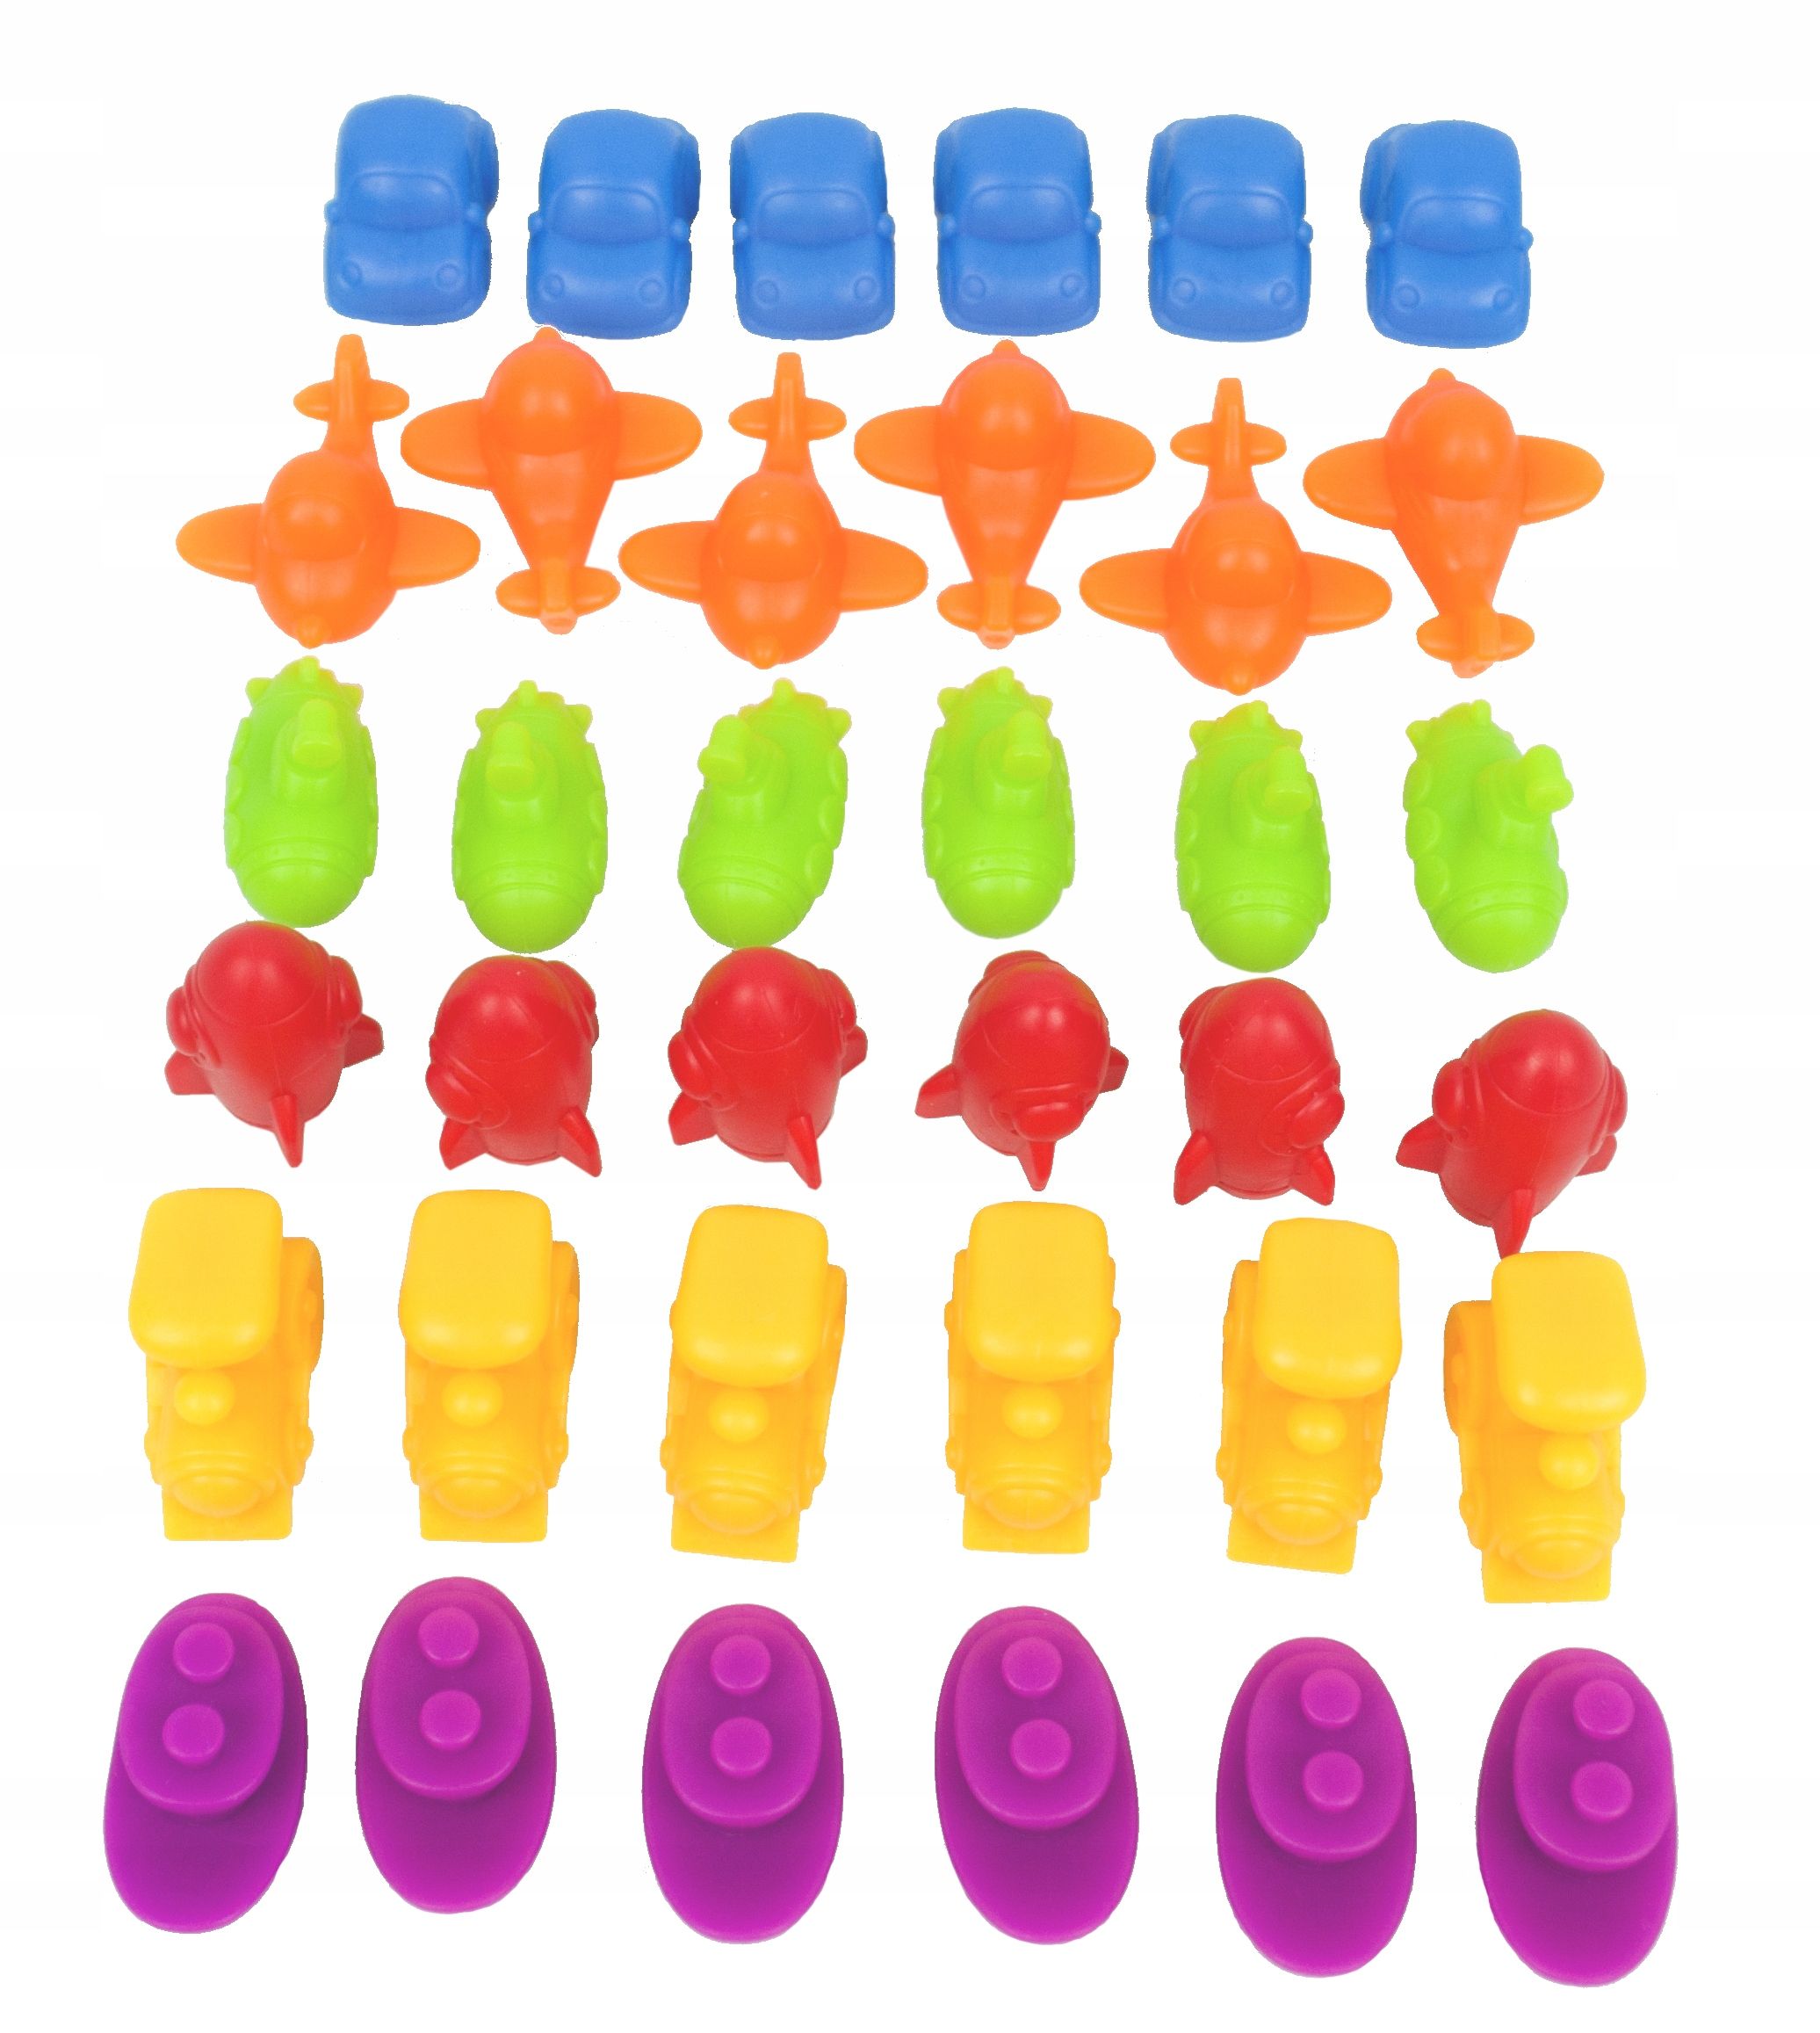 lt444 nauka liczenia sortowanie kolorów montessori kubeczki figury